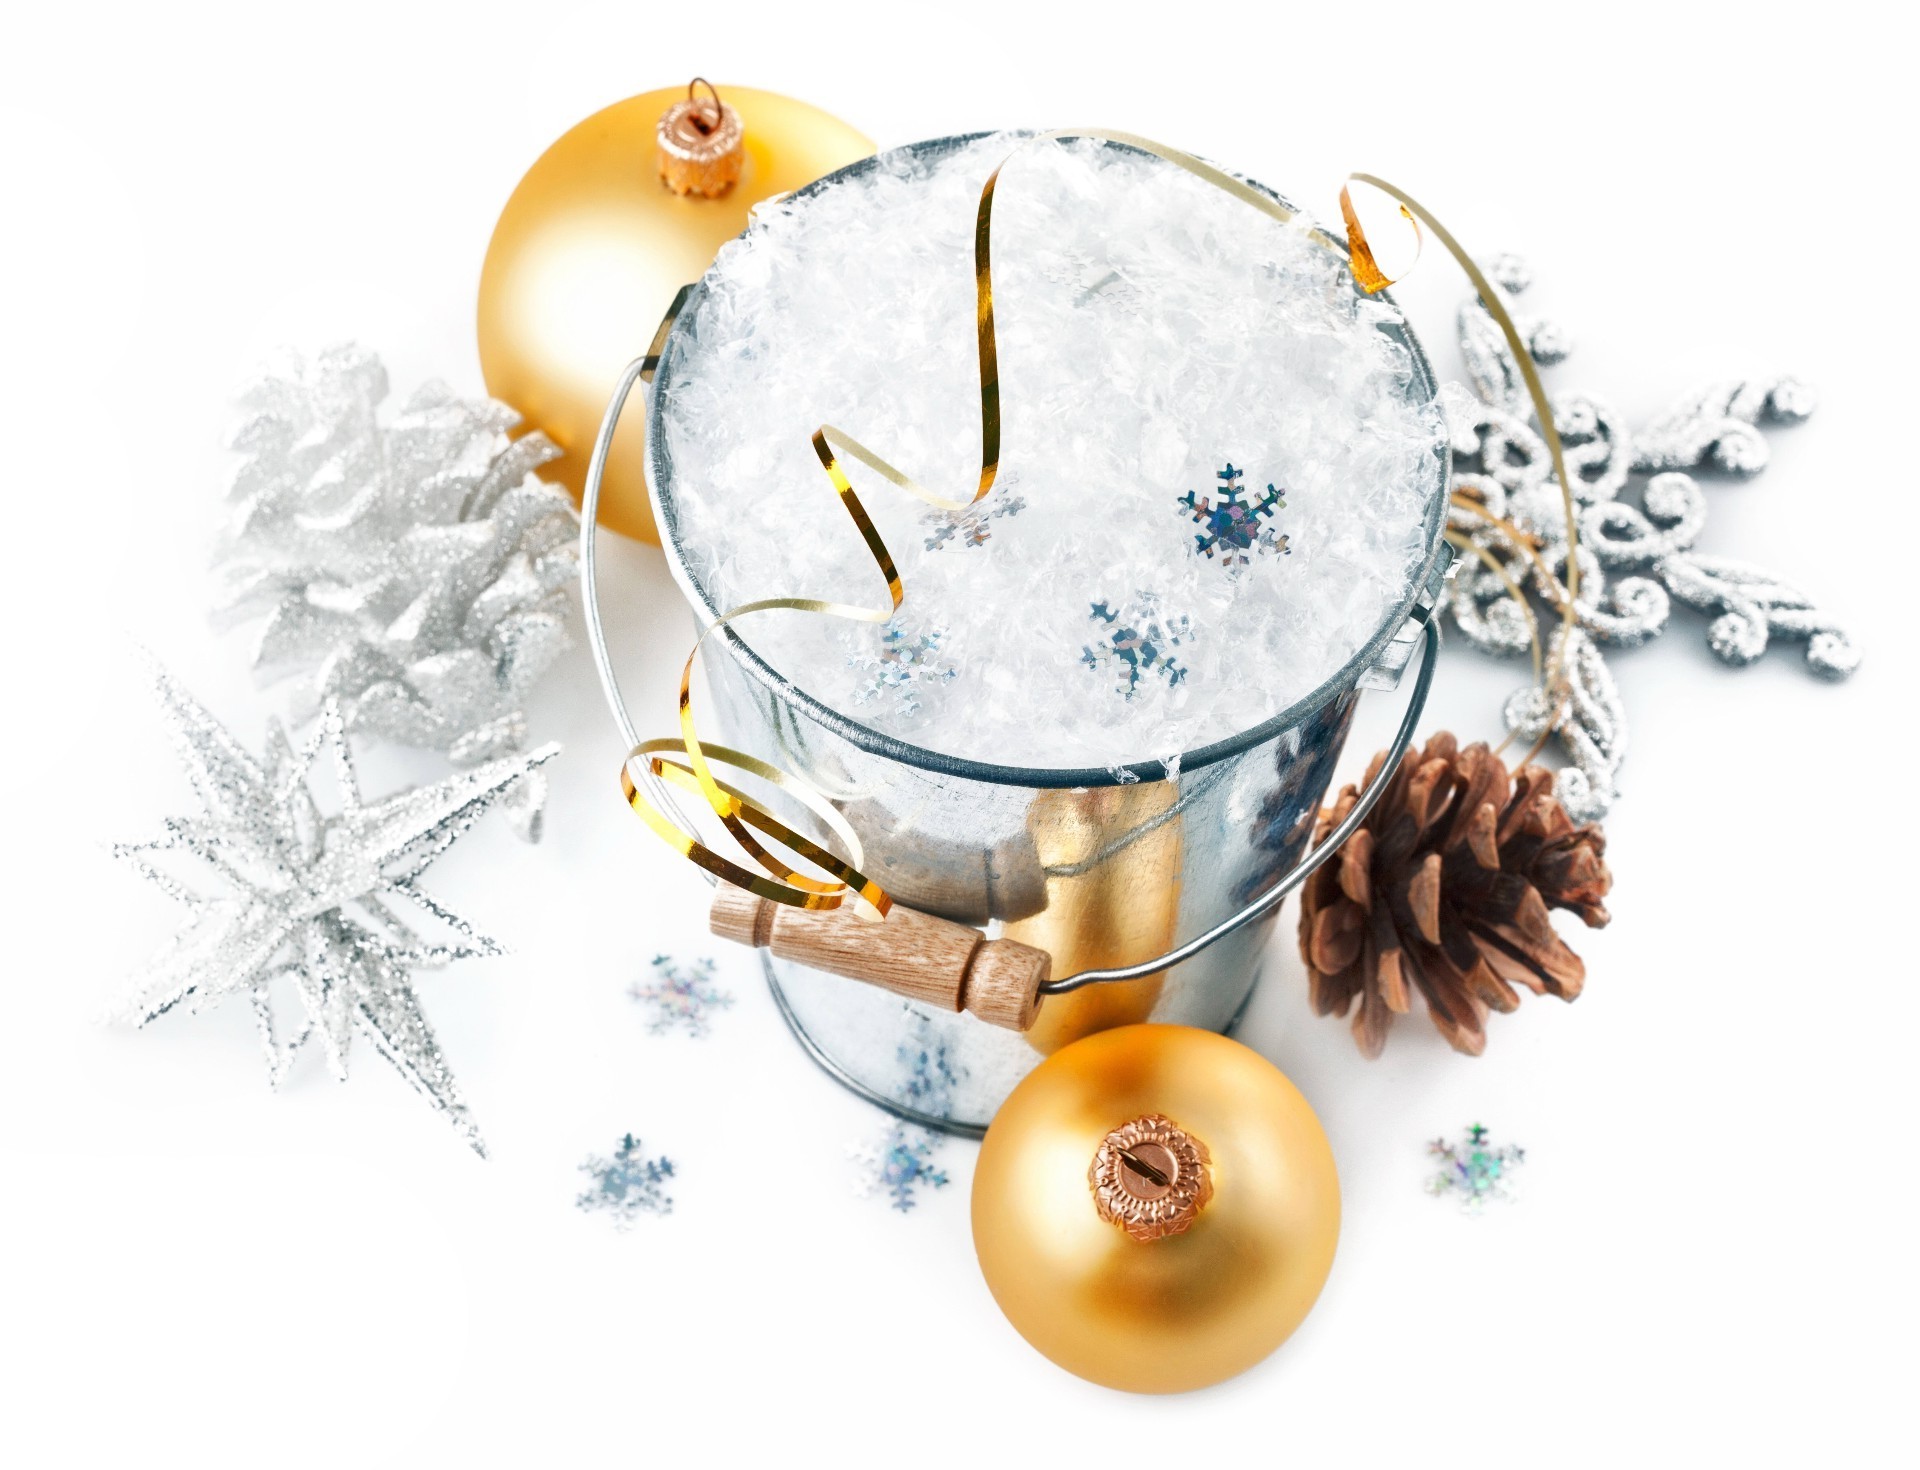 новый год зима рождество мяч праздник украшения рабочего стола стекло золото сфера браслет мерри сезон нить яркий снежинка традиционные снег светит